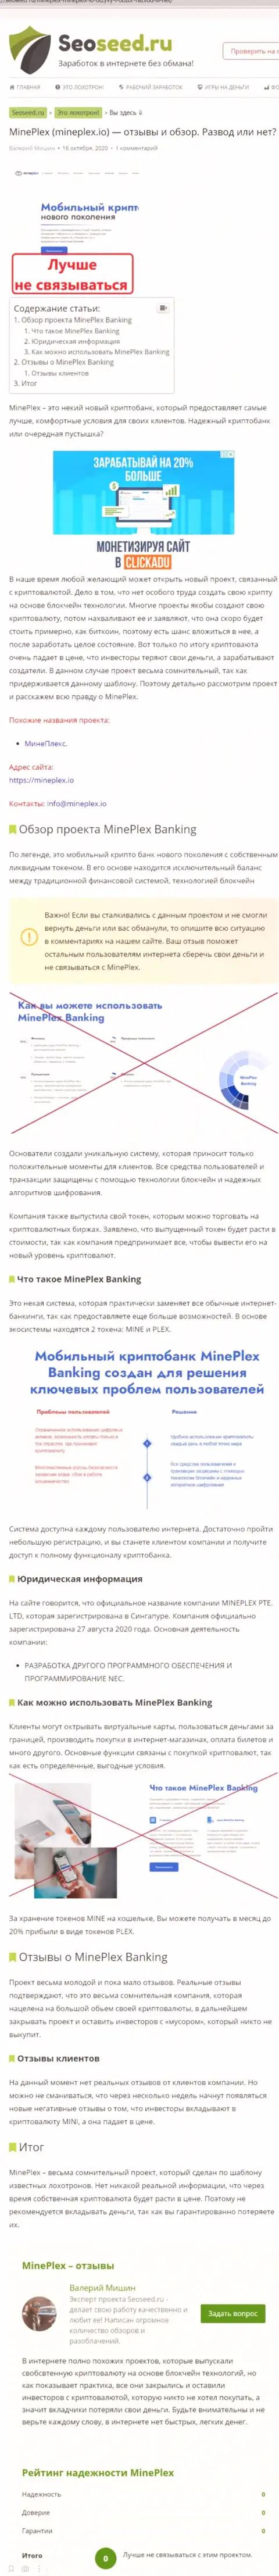 С MinePlex нереально заработать ! Средства отжимают  - это МОШЕННИКИ !!! (обзорная статья)